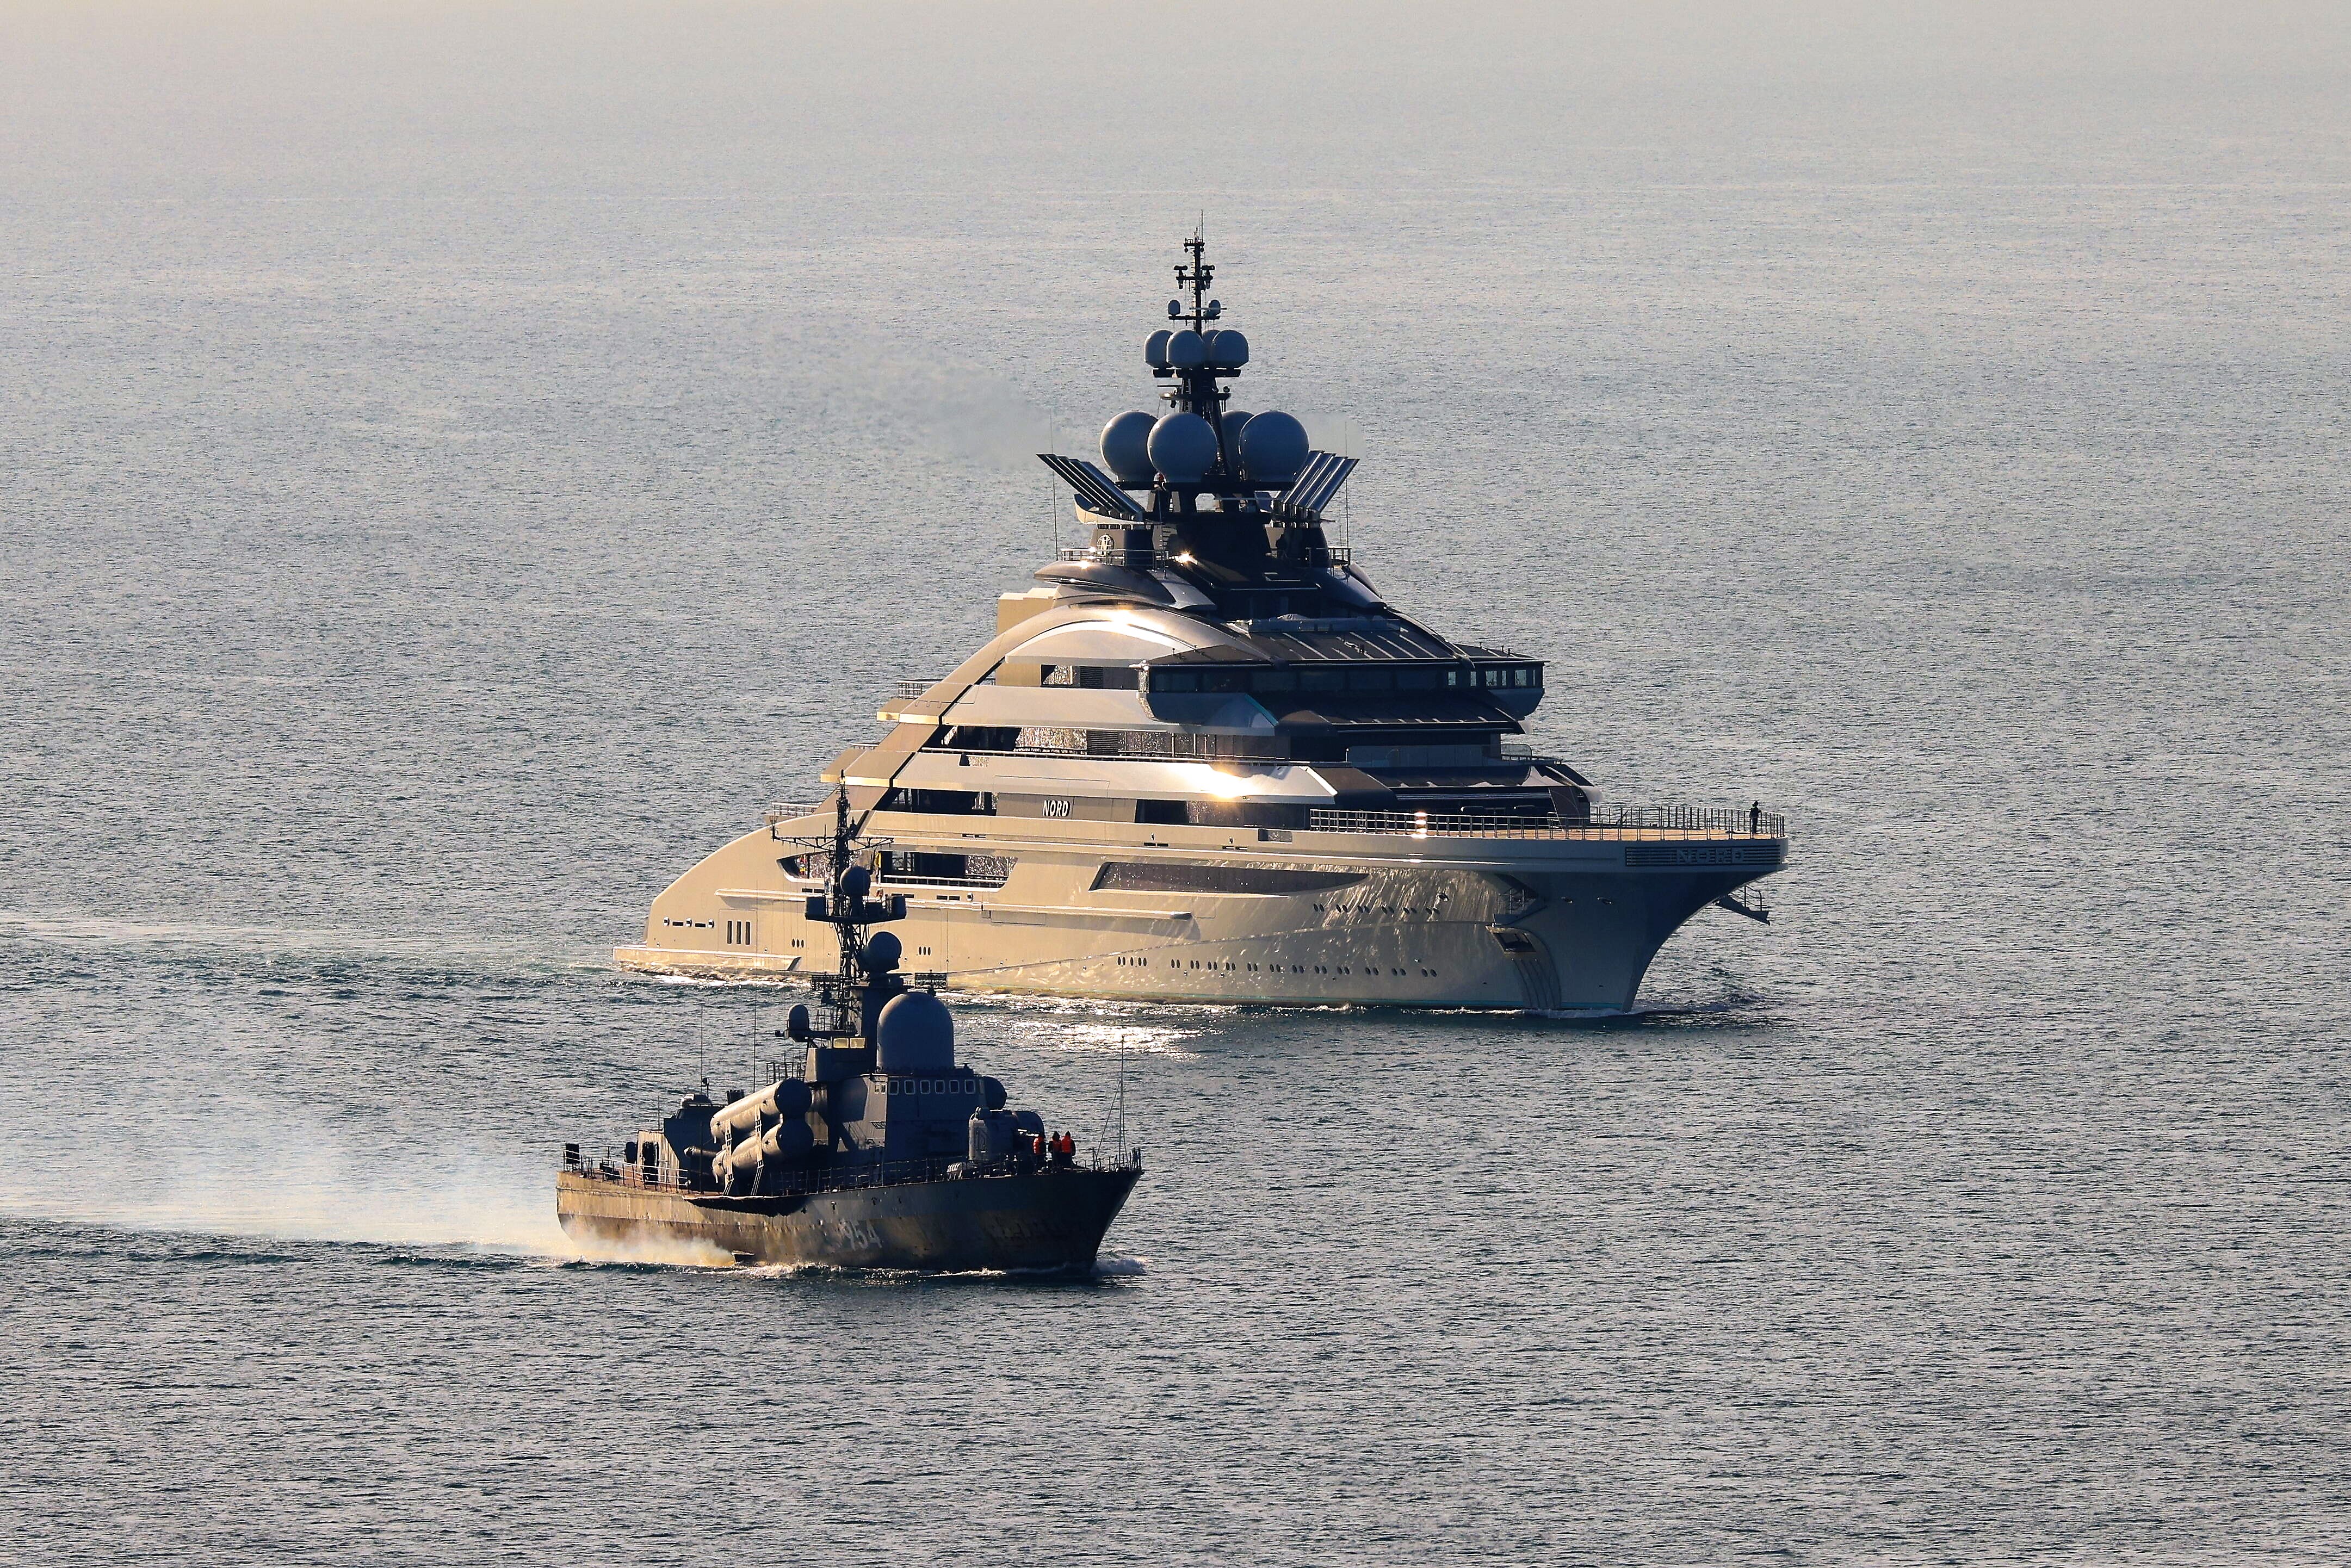 Russische Oligarchen-Yacht plötzlich aus Hafen verschwunden - trotz Beschlagnahmung!